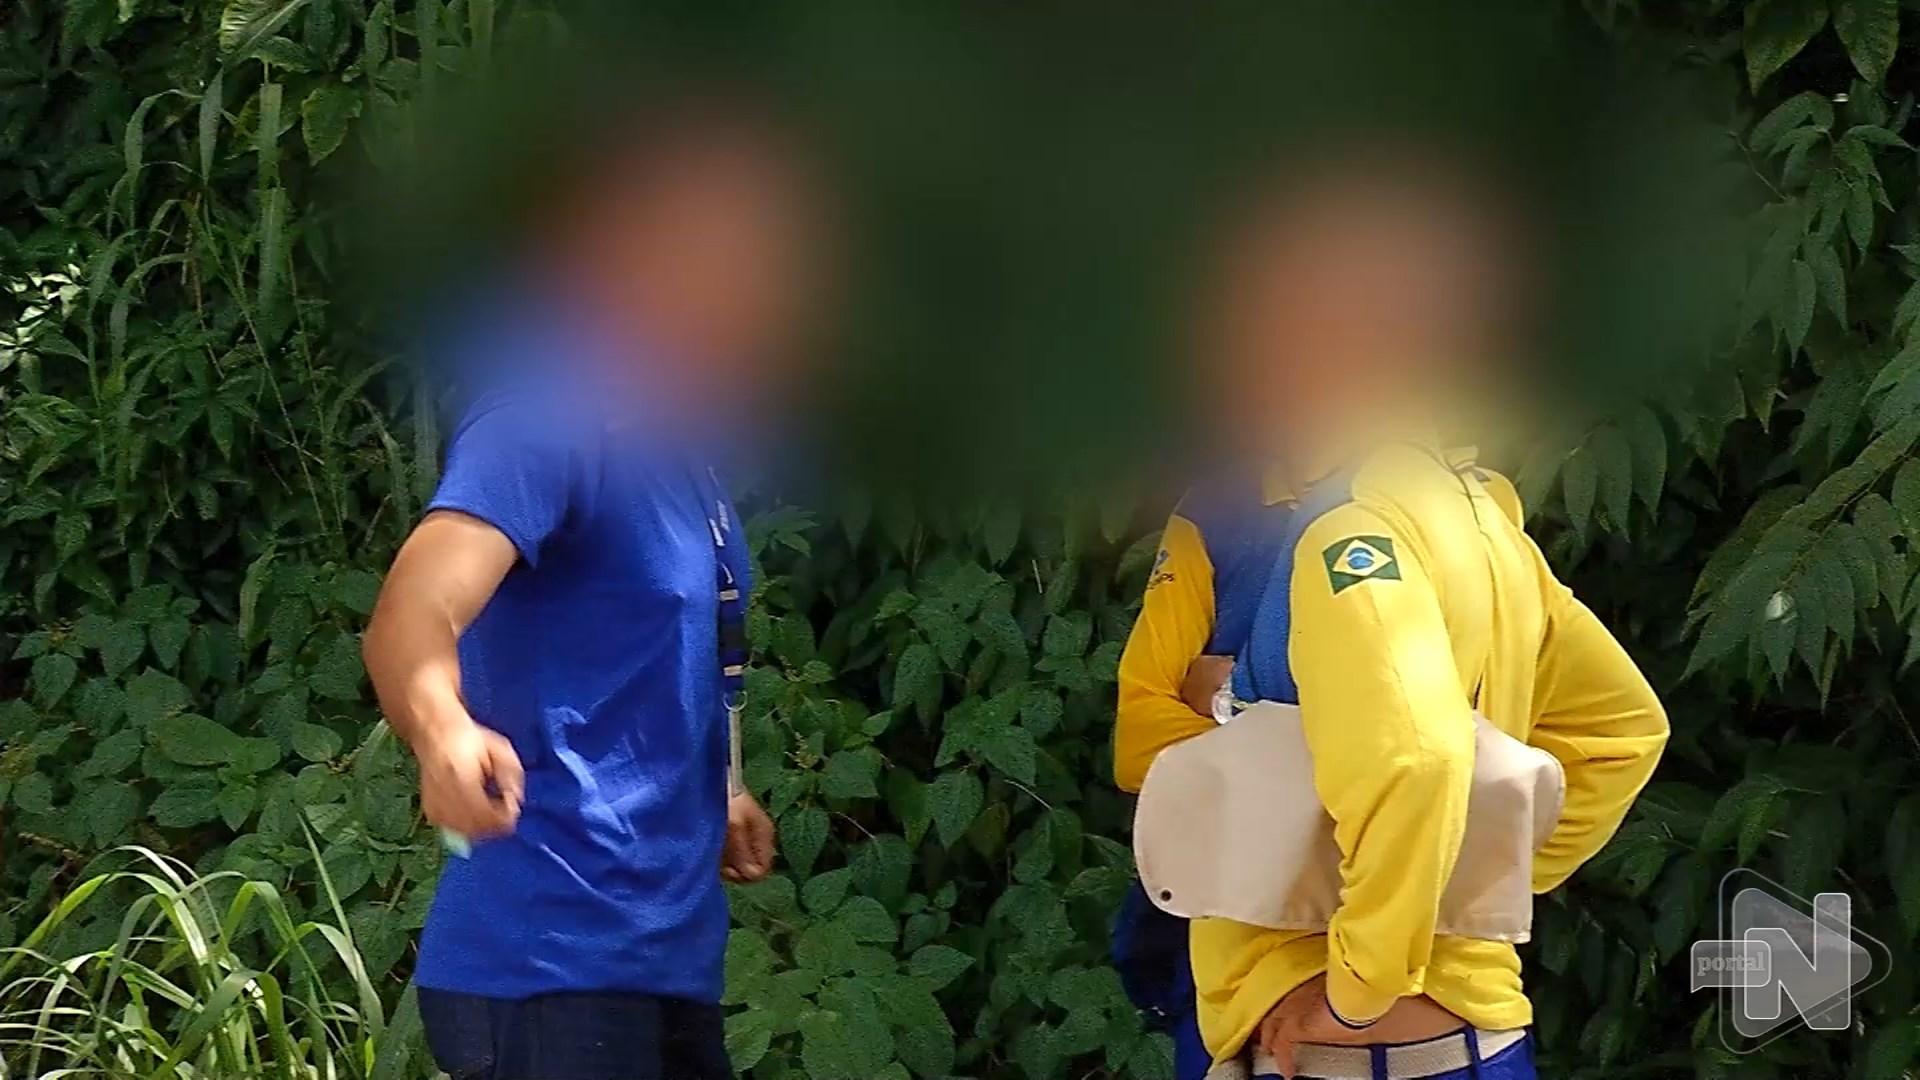 Funcionário dos correios é sequestrado por trio de suspeitos em Manaus. Foto: Reprodução/ TV Norte Amazonas.